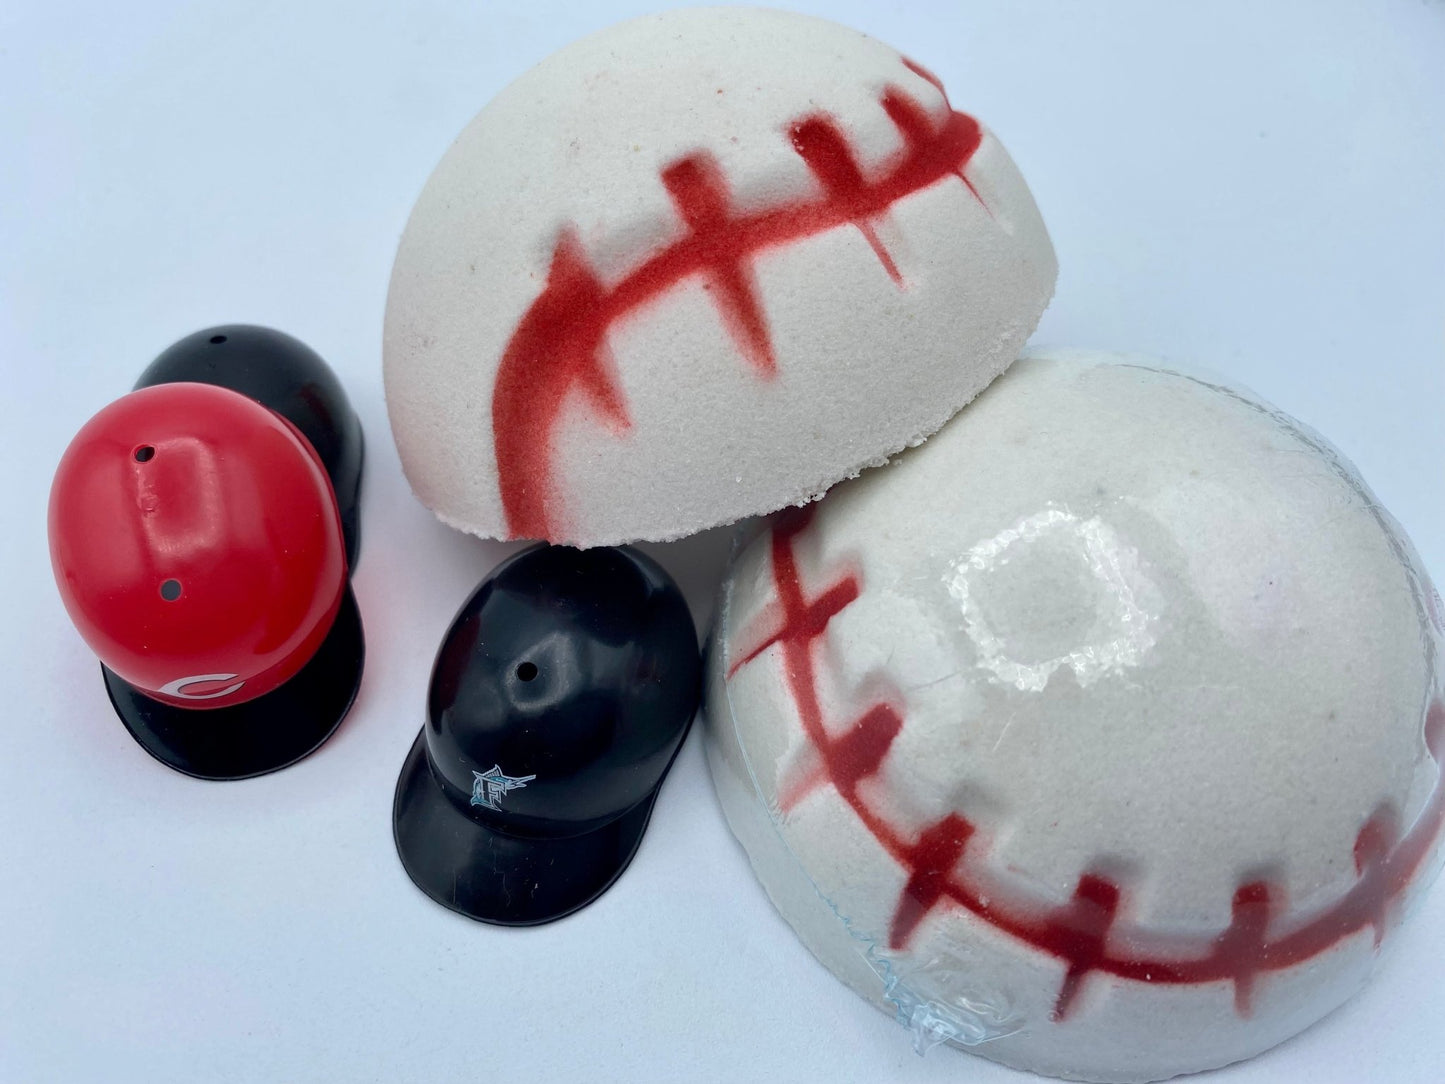 Baseball Bath Bomb with Toy Inside - Berwyn Betty's Bath & Body Shop